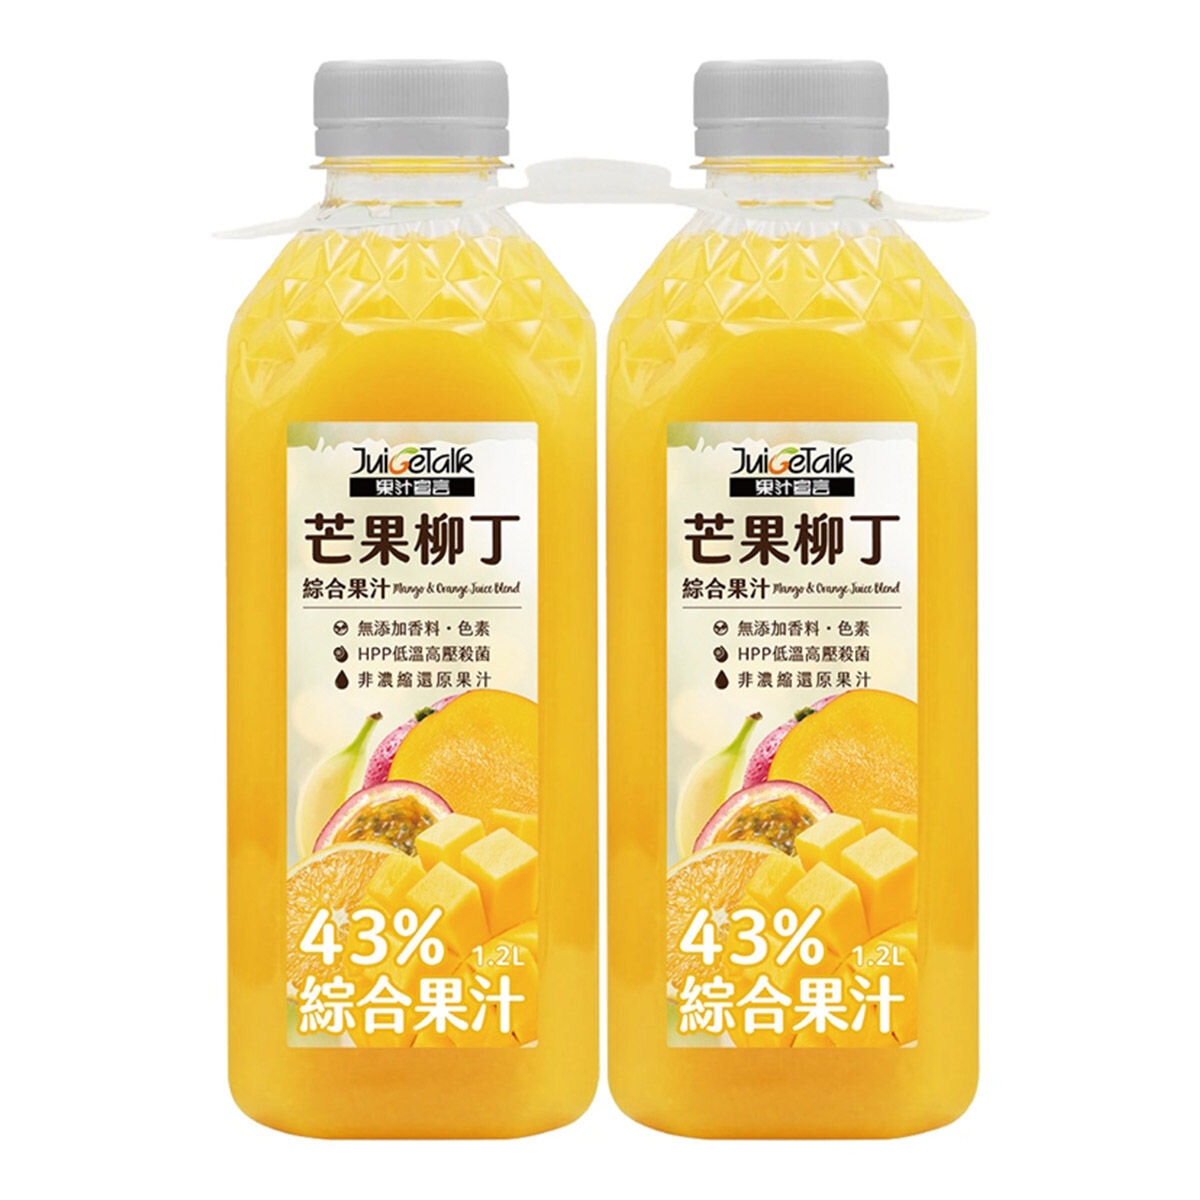 果汁宣言 芒果柳丁綜合果汁 1.2公升 X 2入